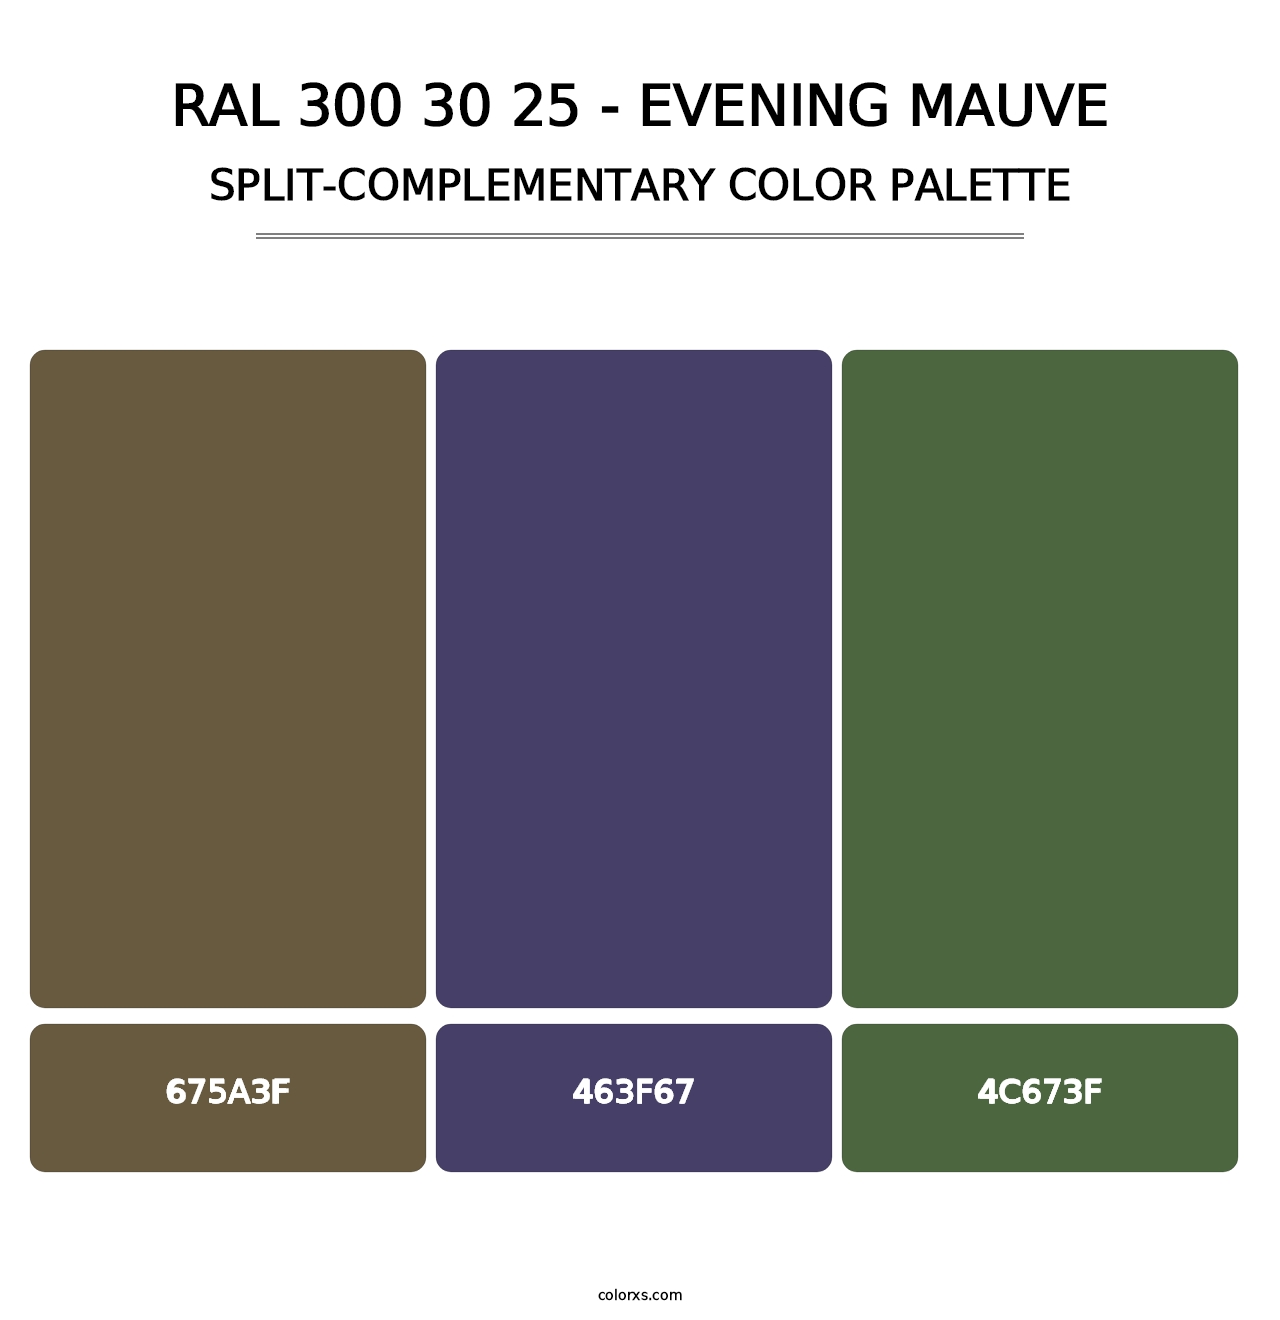 RAL 300 30 25 - Evening Mauve - Split-Complementary Color Palette